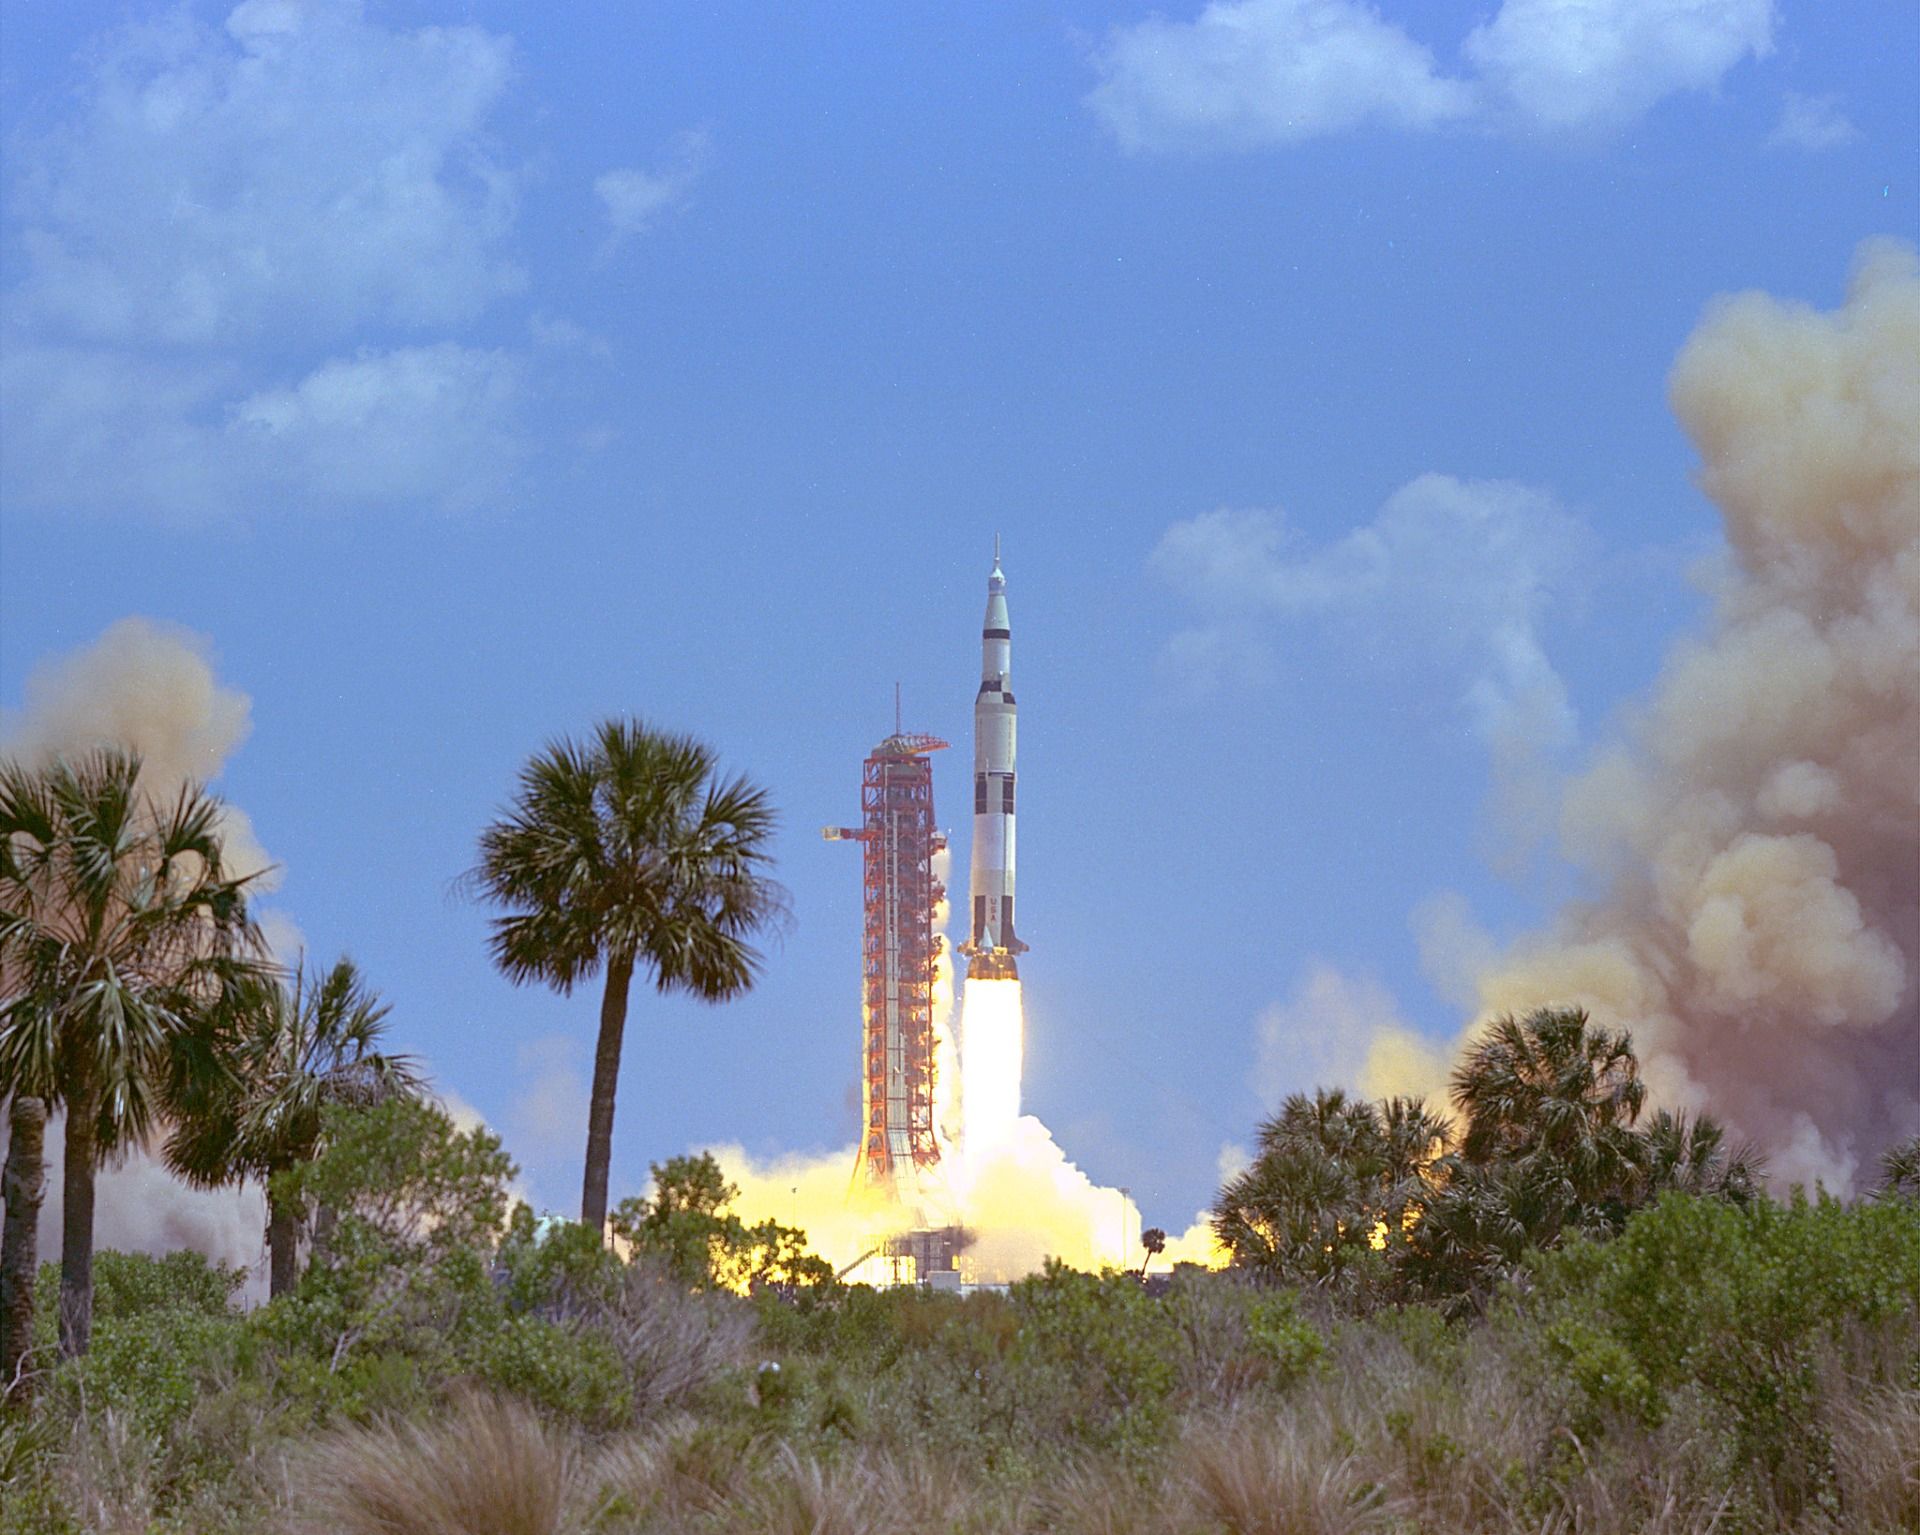 Apollo 16 launch